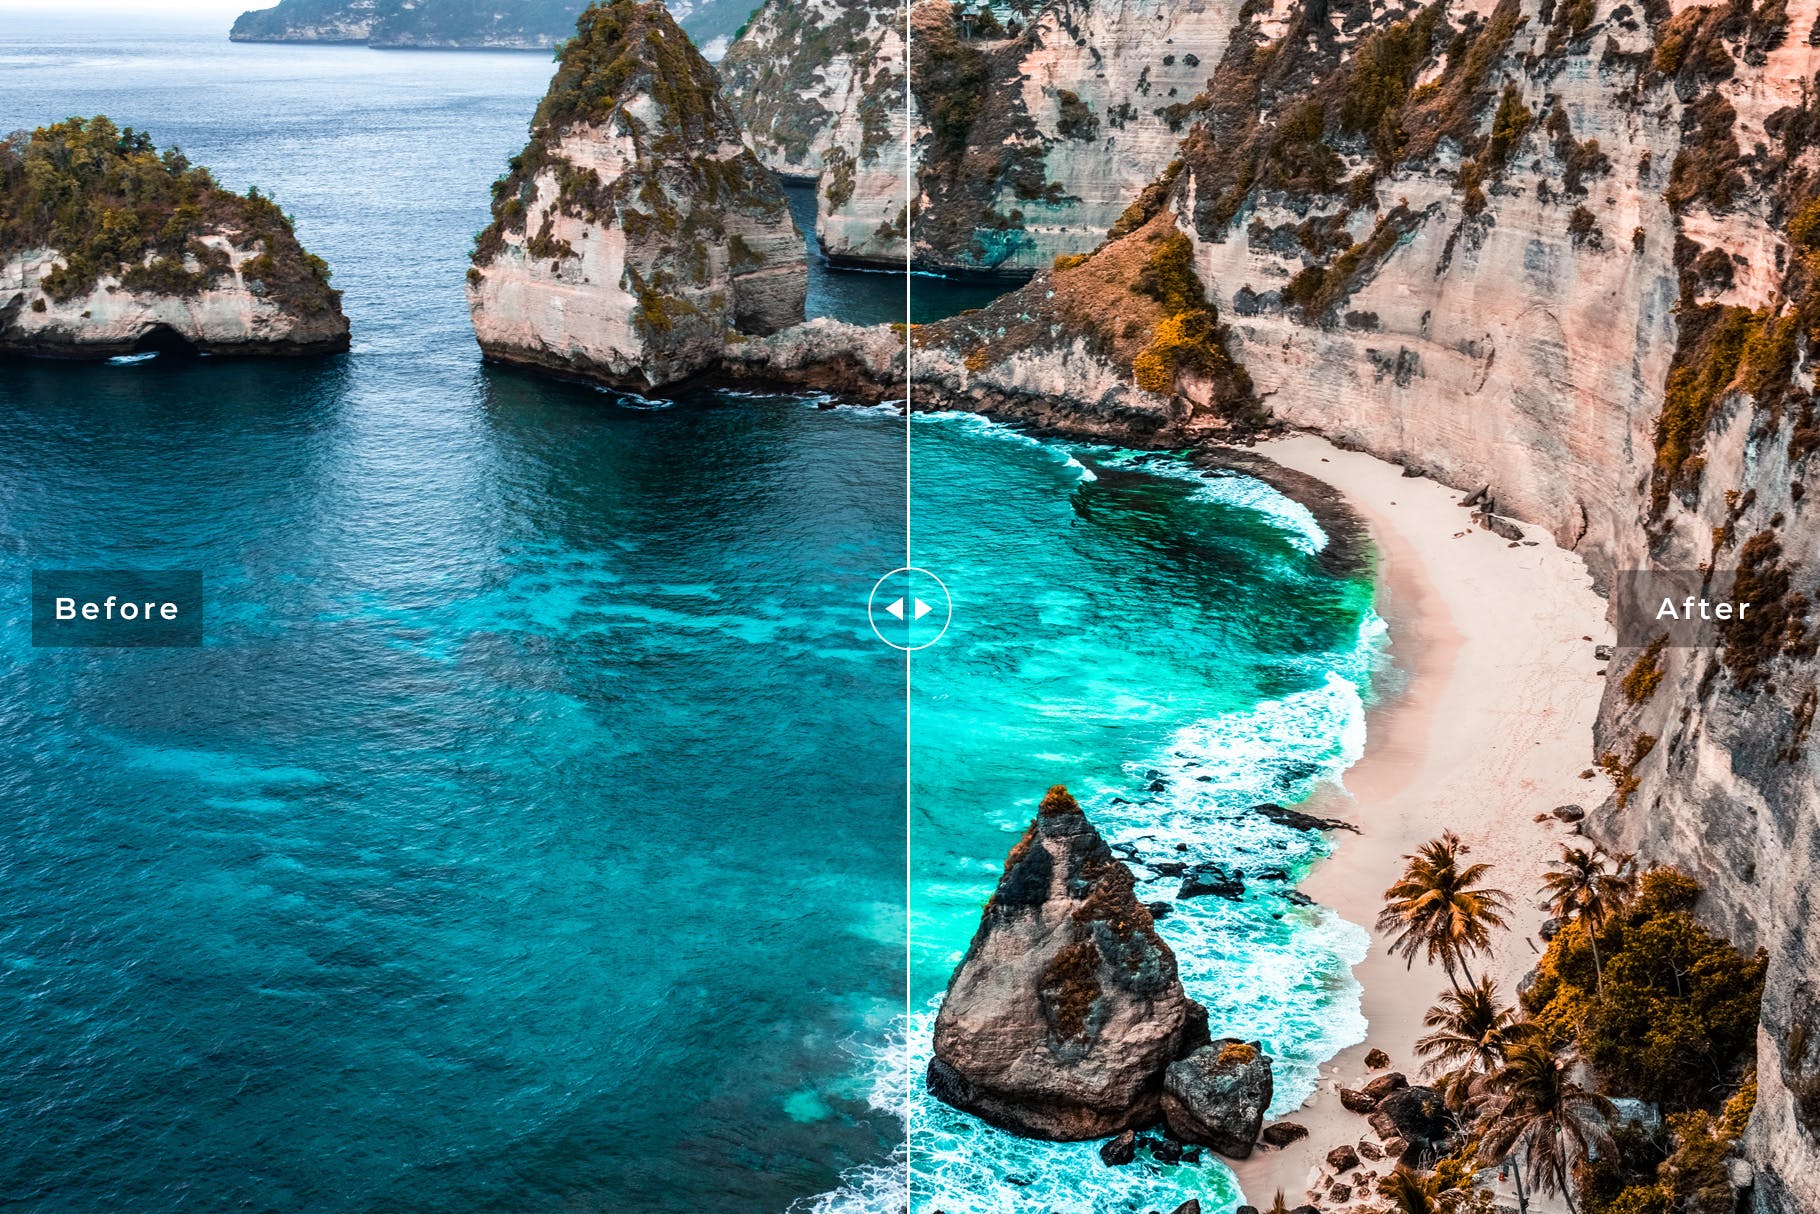 海洋蓝调色滤镜第一素材精选LR预设-海岛/沙滩/大海摄影调色绝配 Ocean Blue Mobile & Desktop Lightroom Presets插图(3)